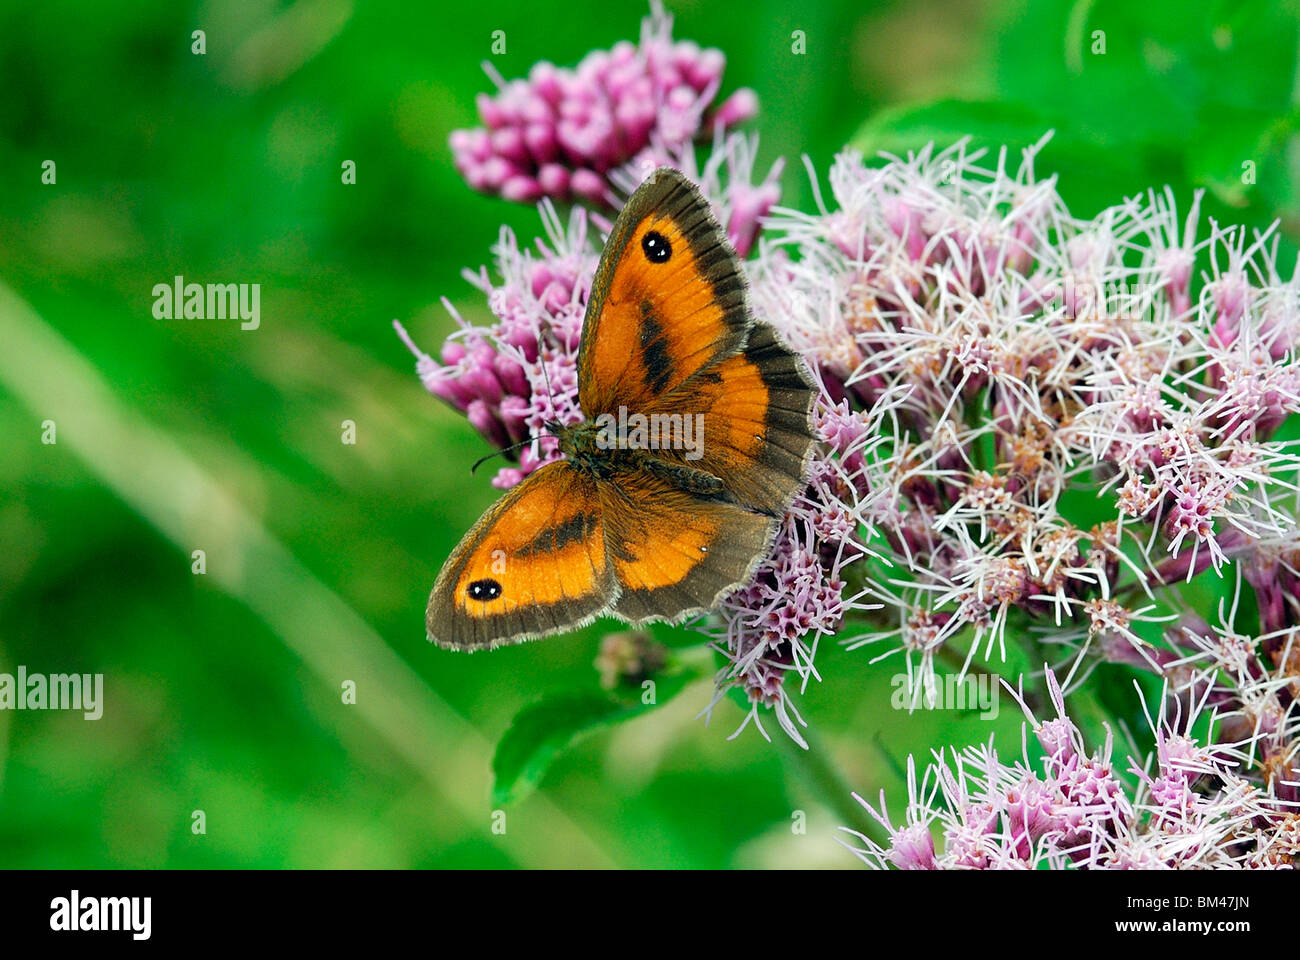 Gatekeeper butterfly Stock Photo